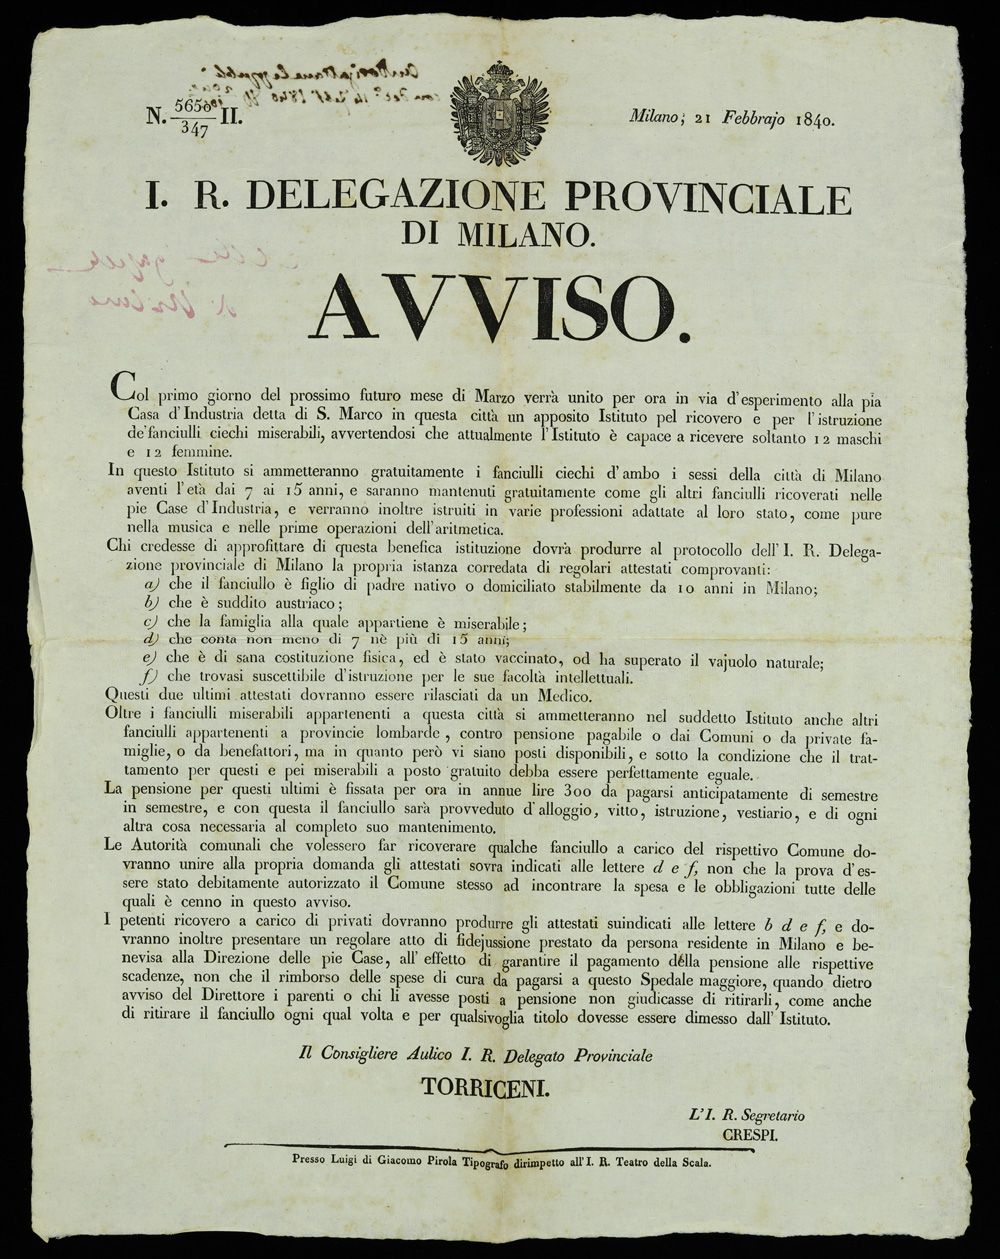 l'avviso, pubblicato Il 21 febbraio 1840 dalla Delegazione Provinciale di Milano, a firma del consigliere Torriceni